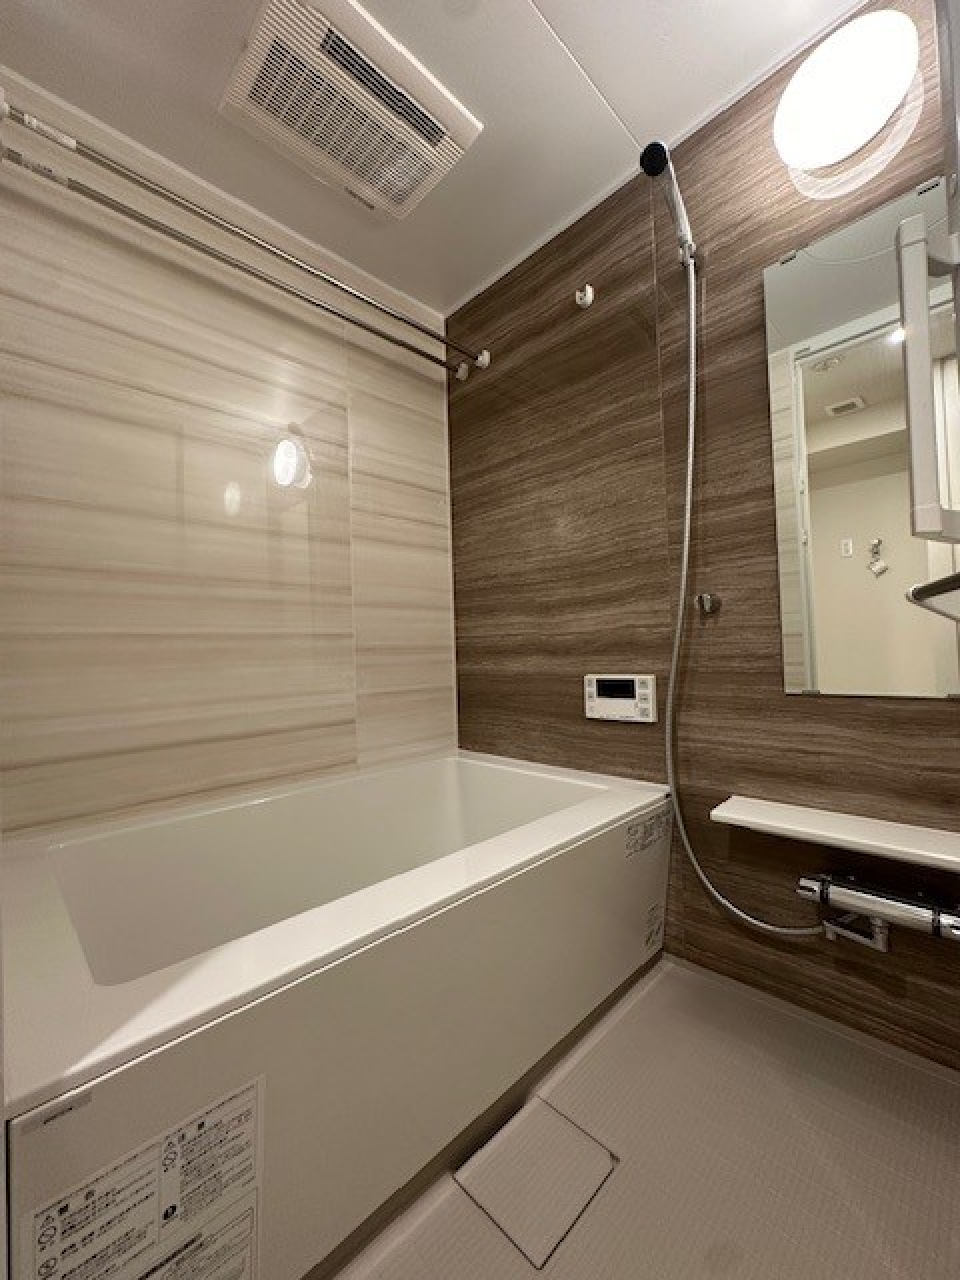 ナチュラルな木目調のパネルが導入された浴室です。